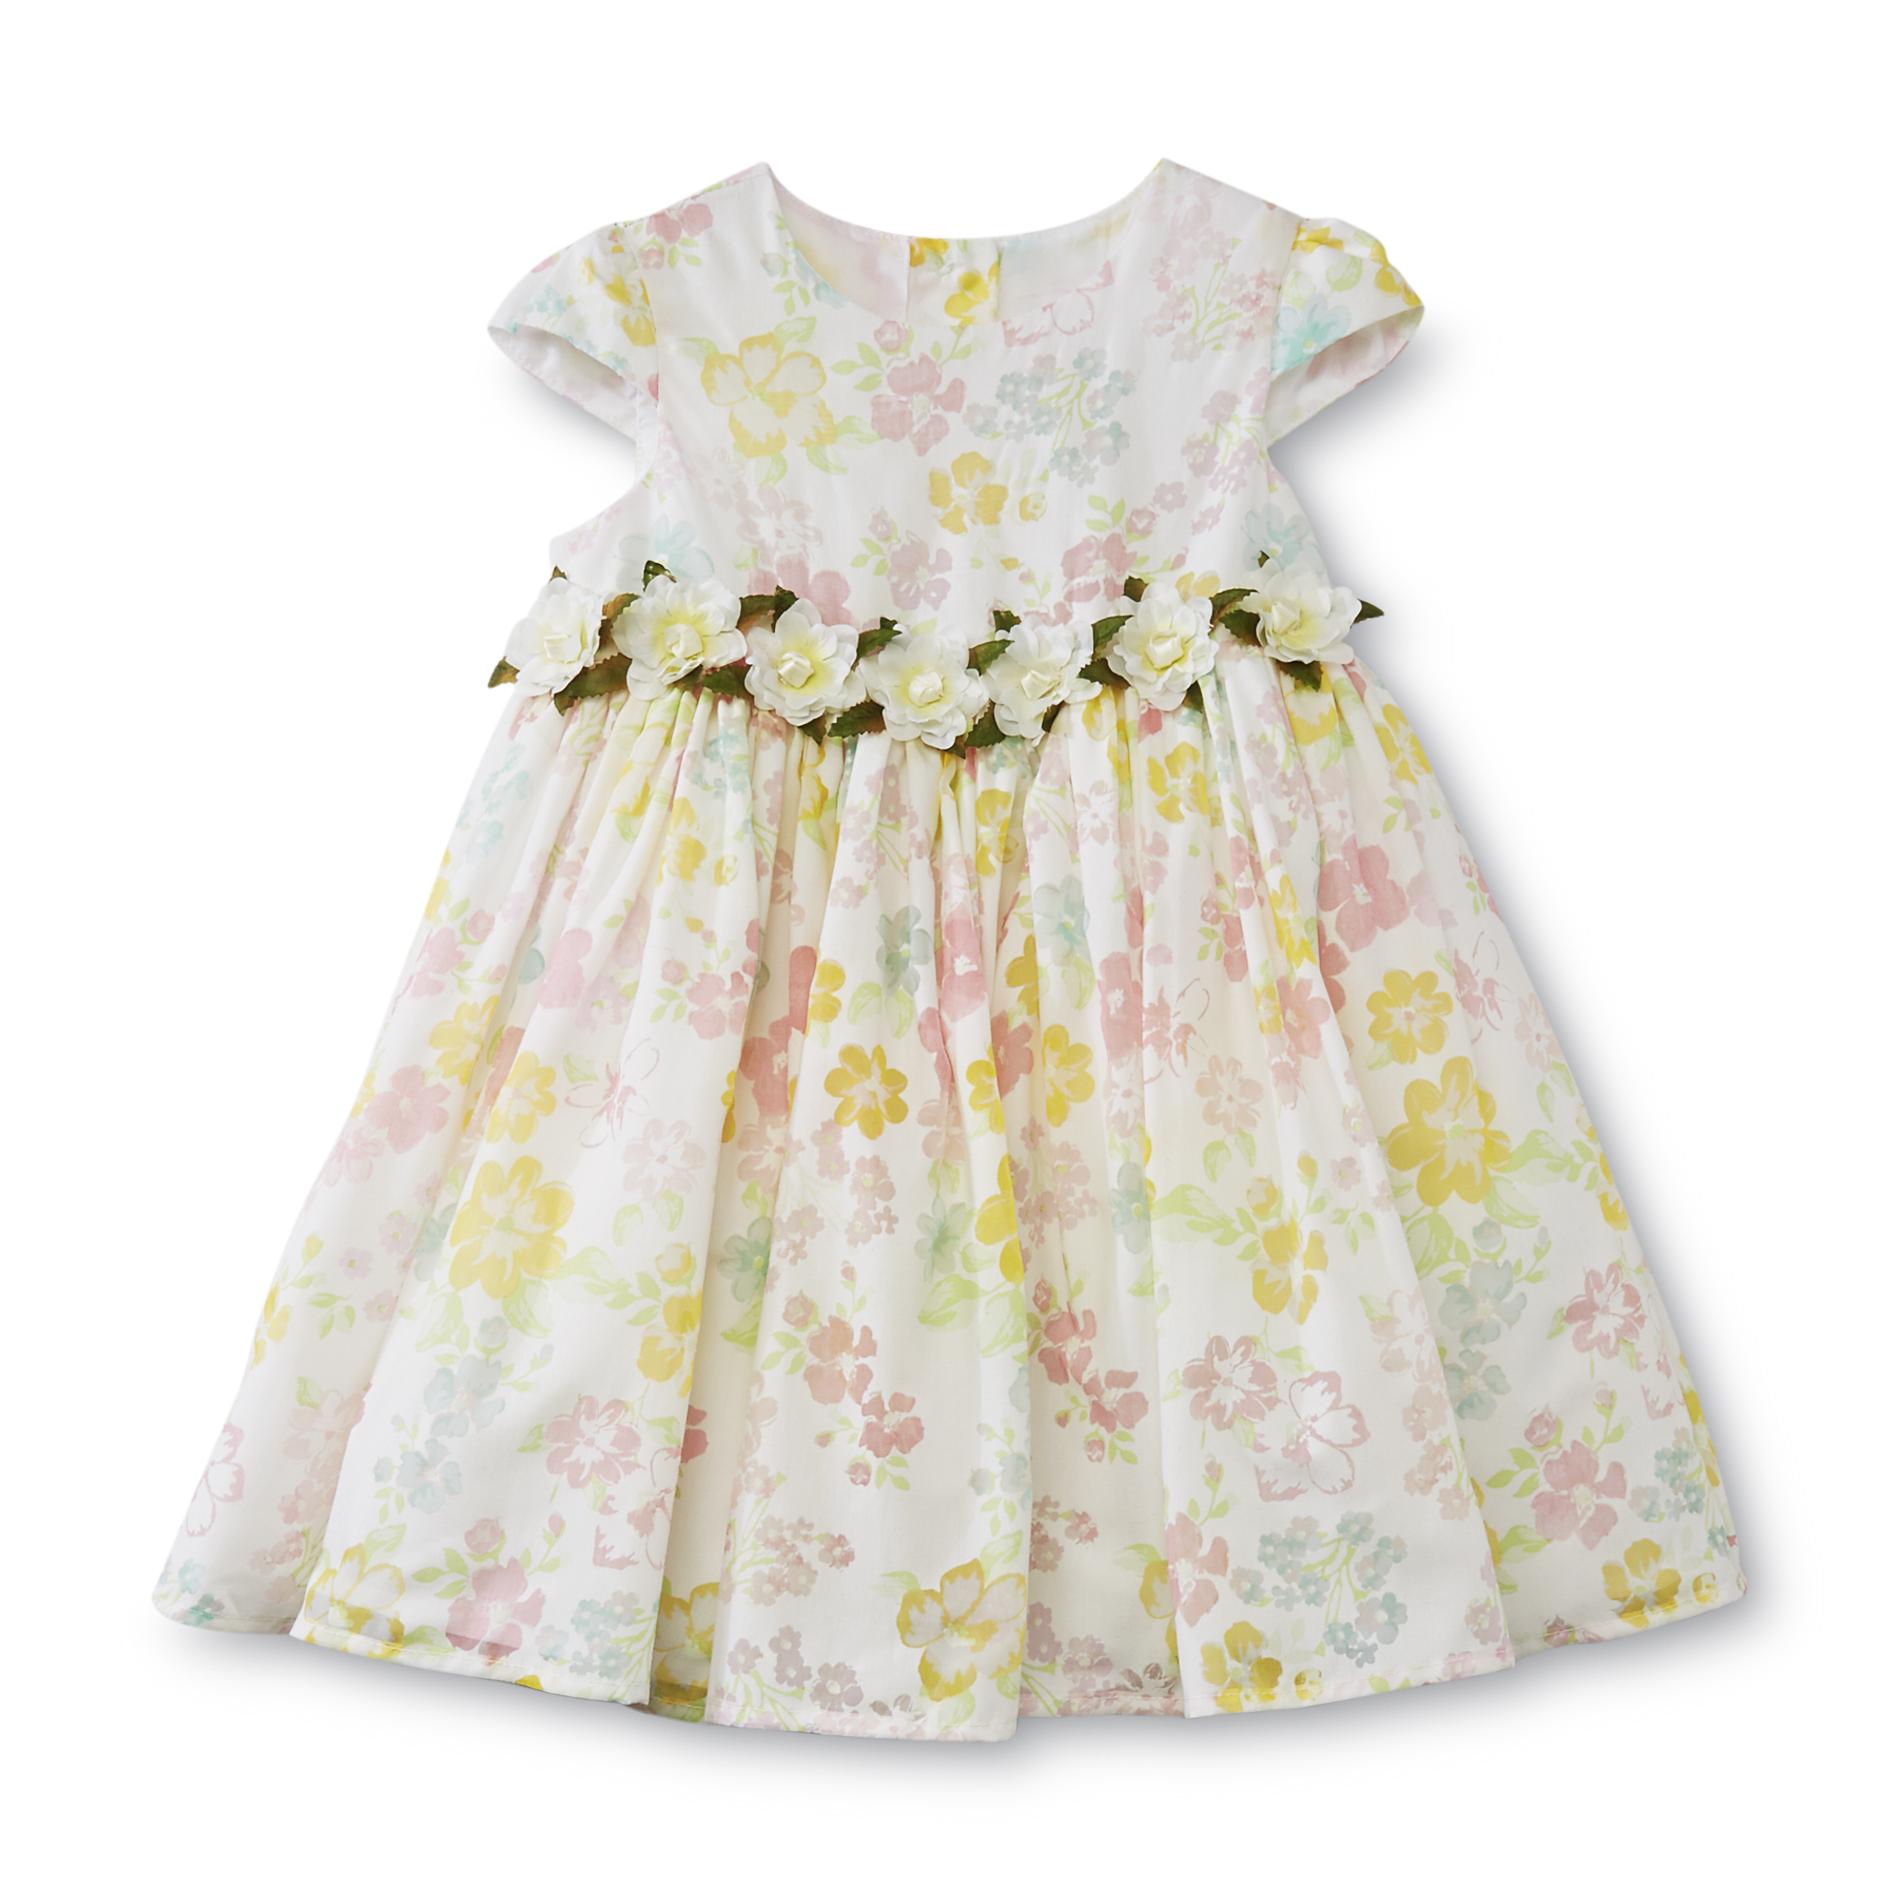 WonderKids Infant & Toddler Girl's Floral Dress